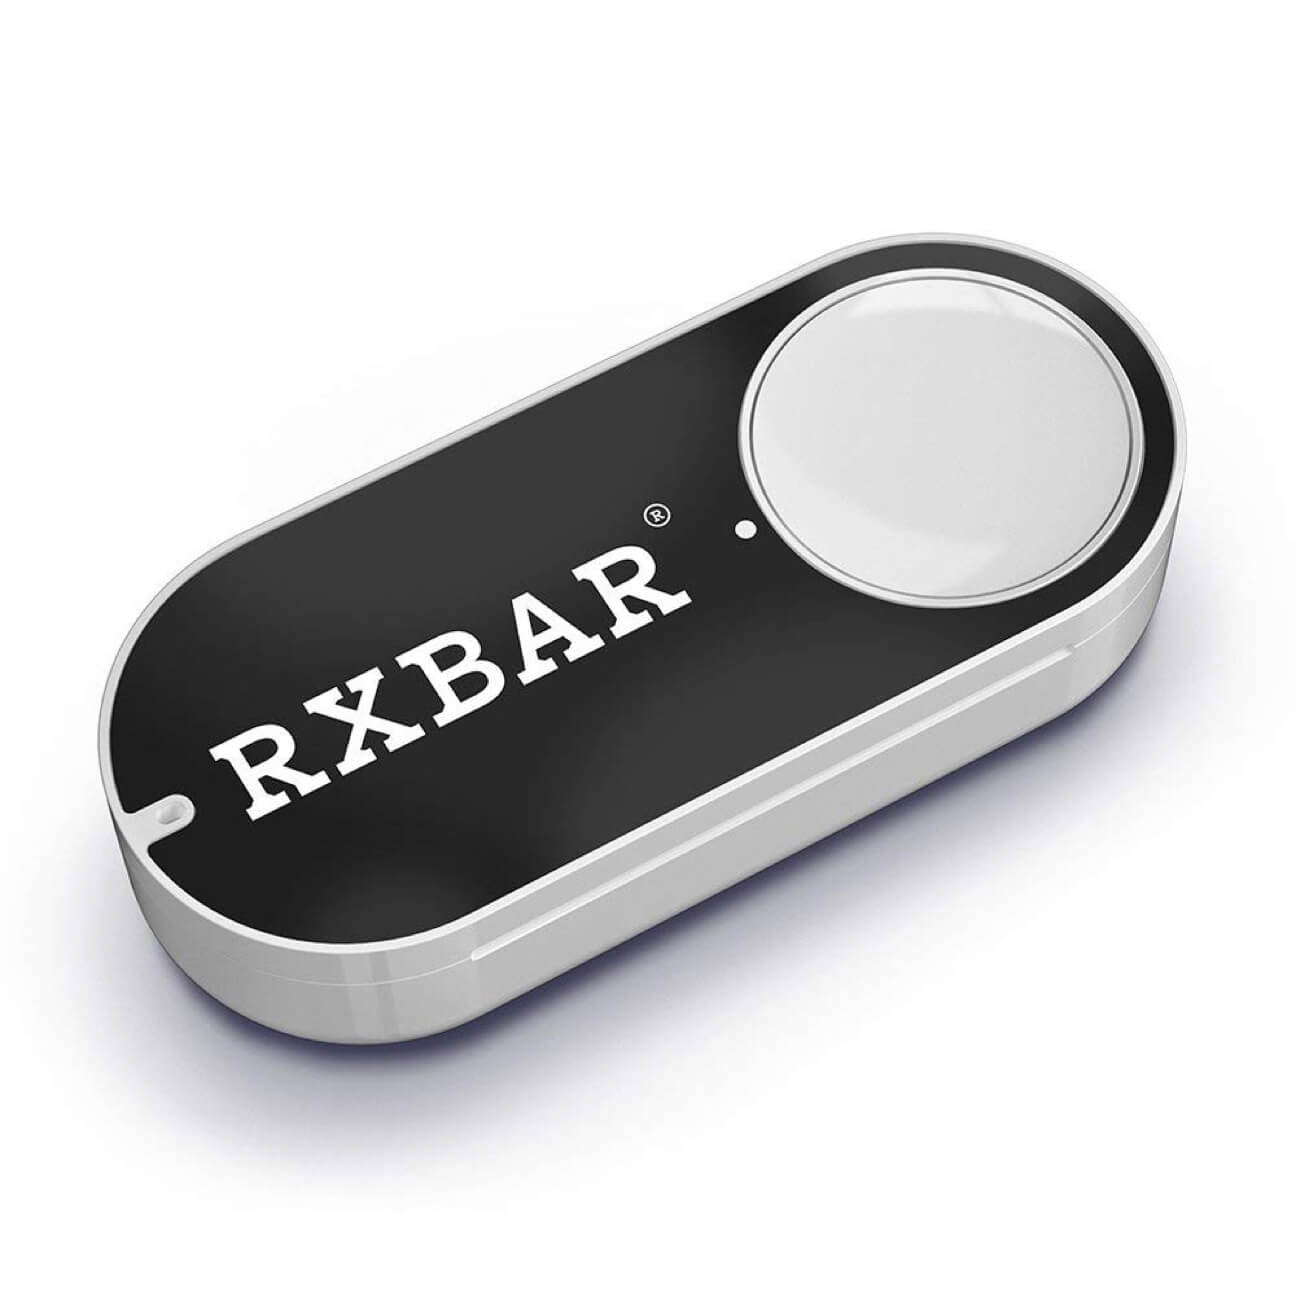 RXBAR Amazon Dash Button Render